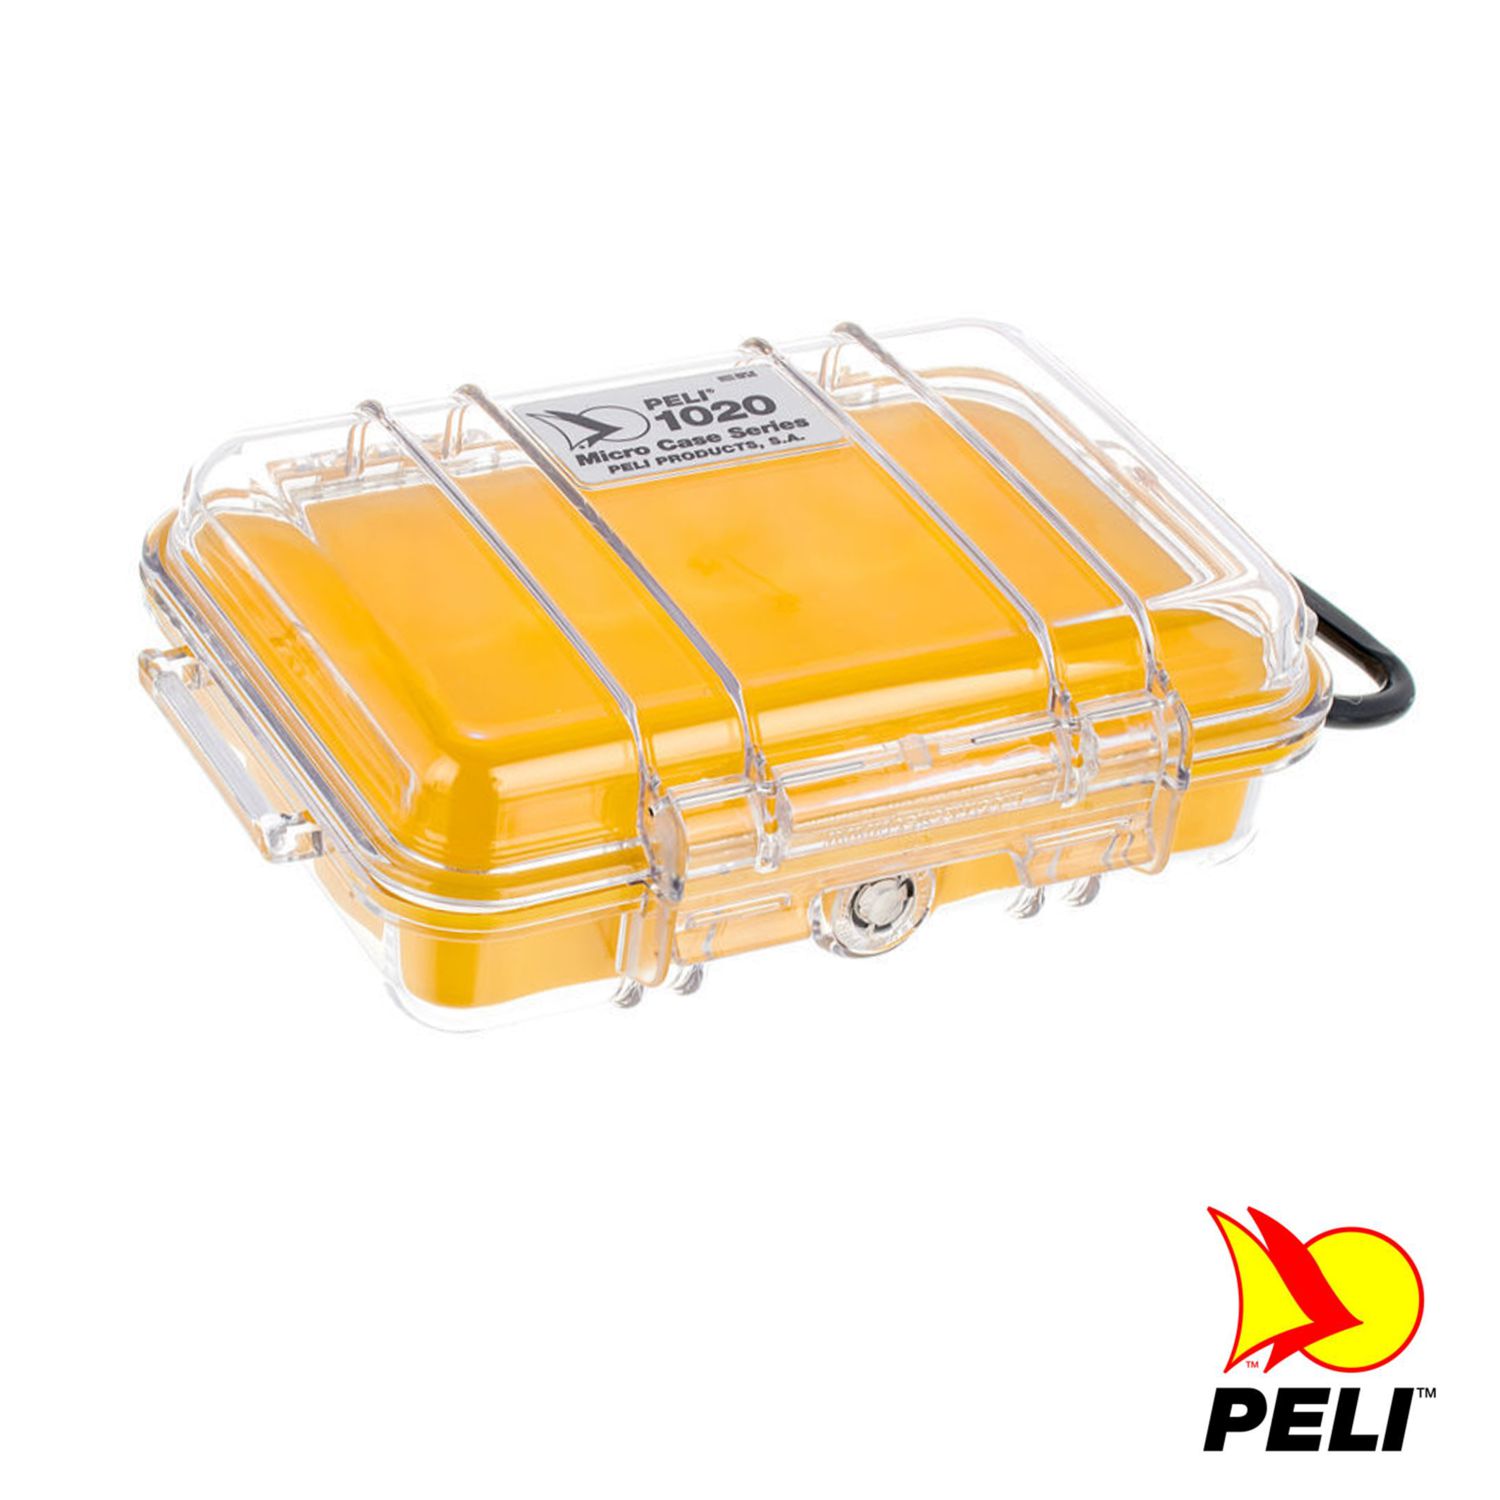 Peli 1020 Koffer, Micro Case, gelb/transparent